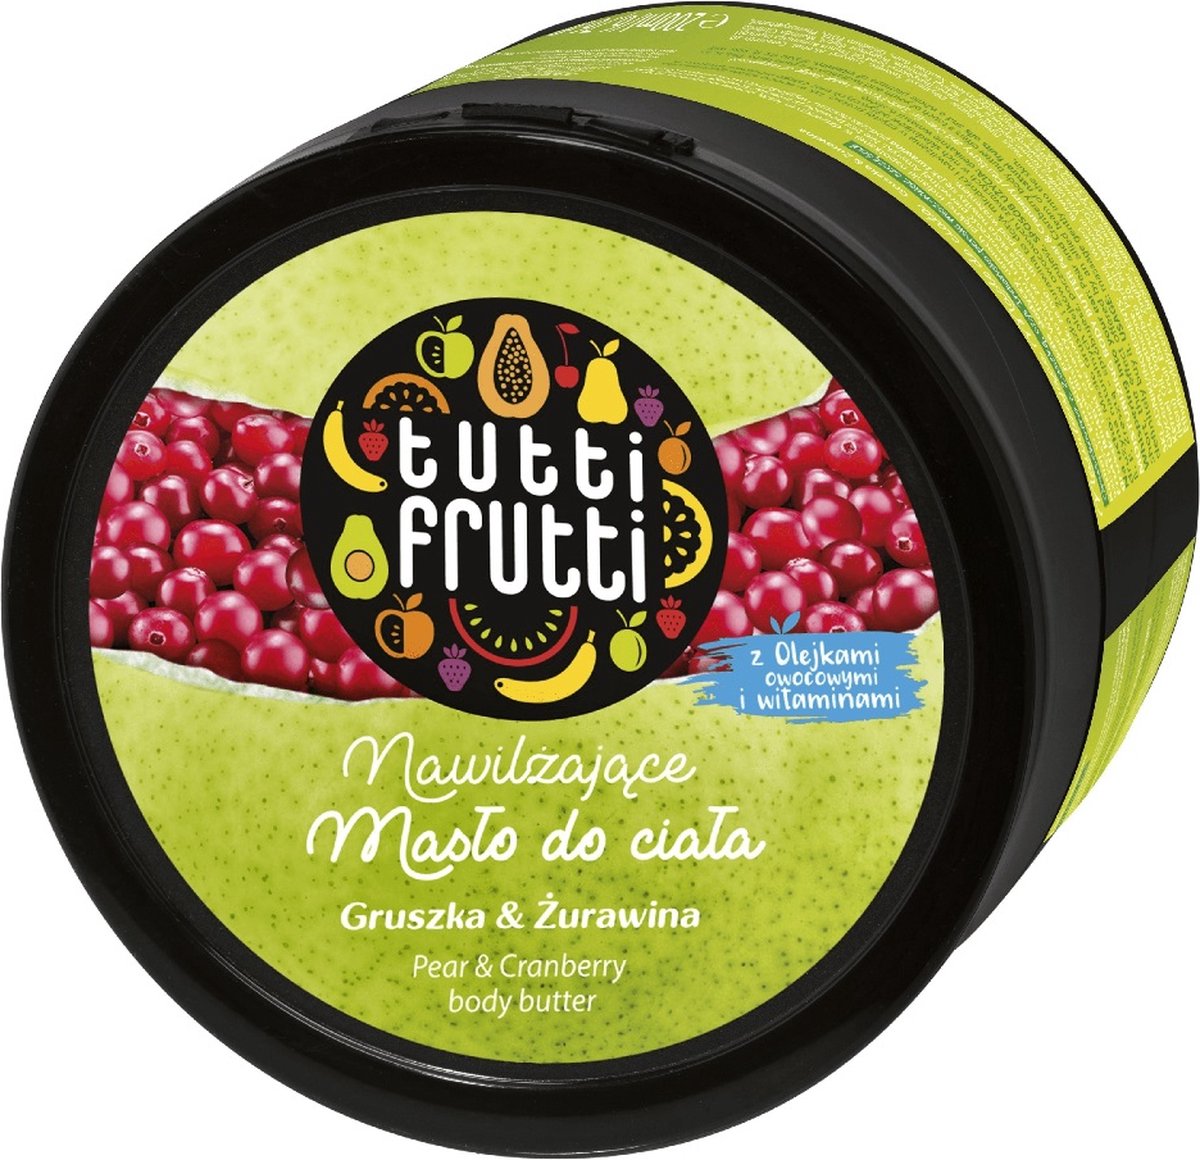 Tutti Frutti Peer & Cranberry vochtinbrengende lichaamsboter 200ml